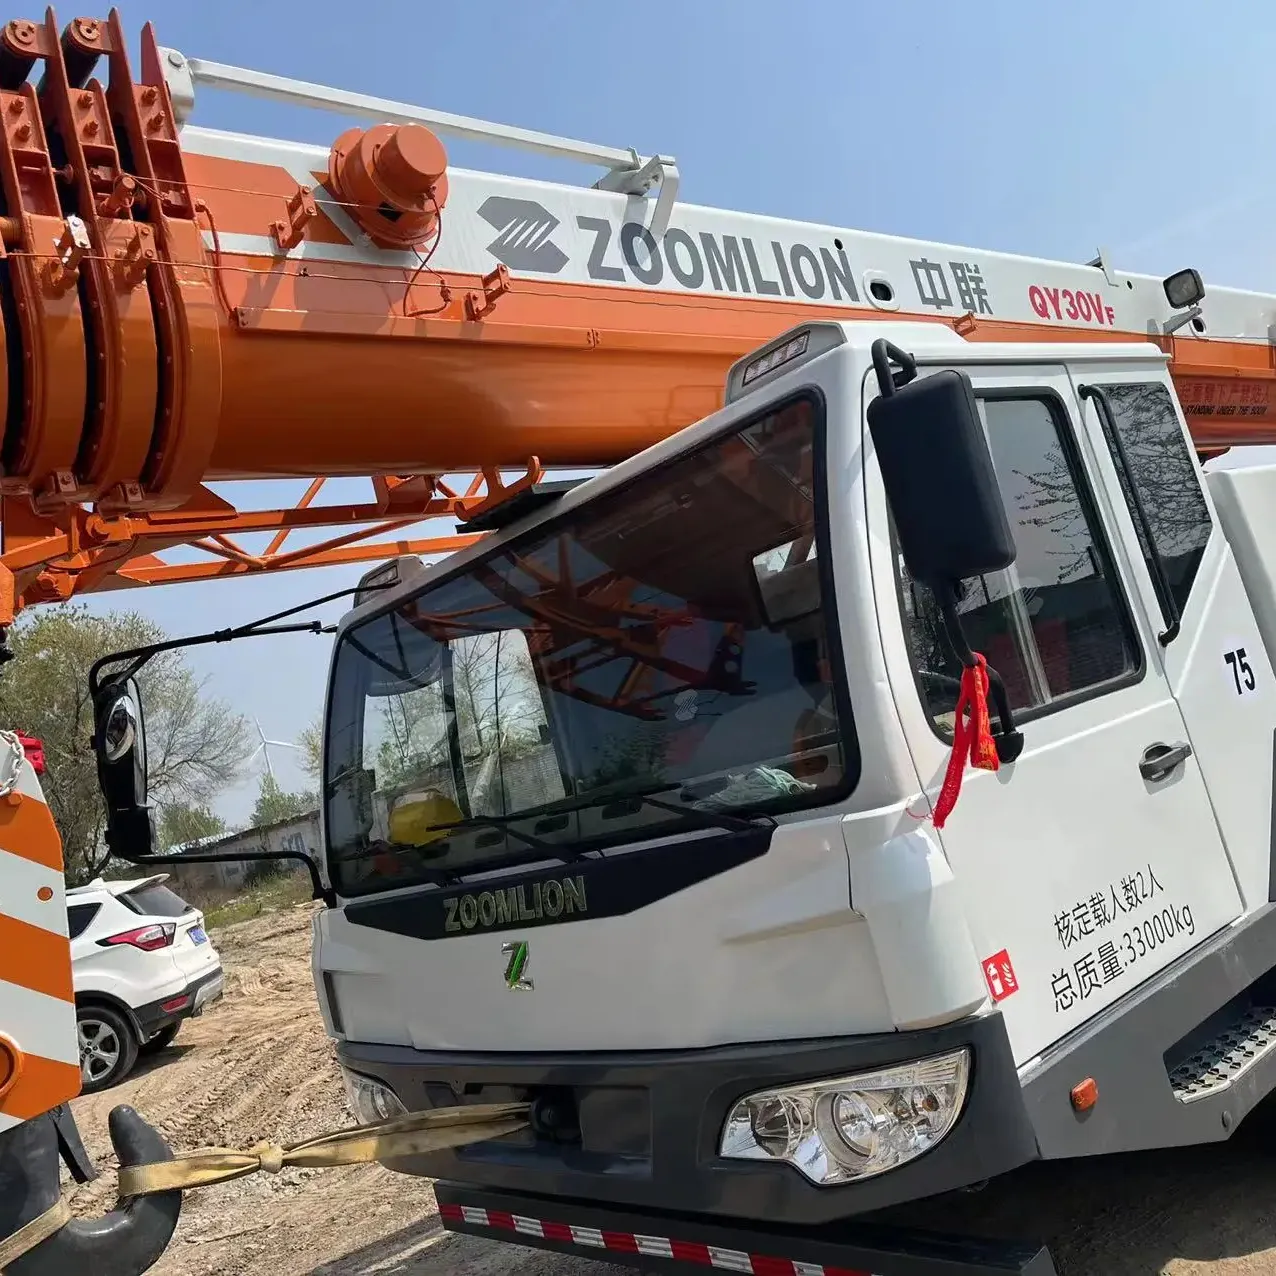 Zoomlion 30Ton guindastes de esteira montados em caminhão hidráulico Venda quente com bom estado e preços baixos localização em Xangai